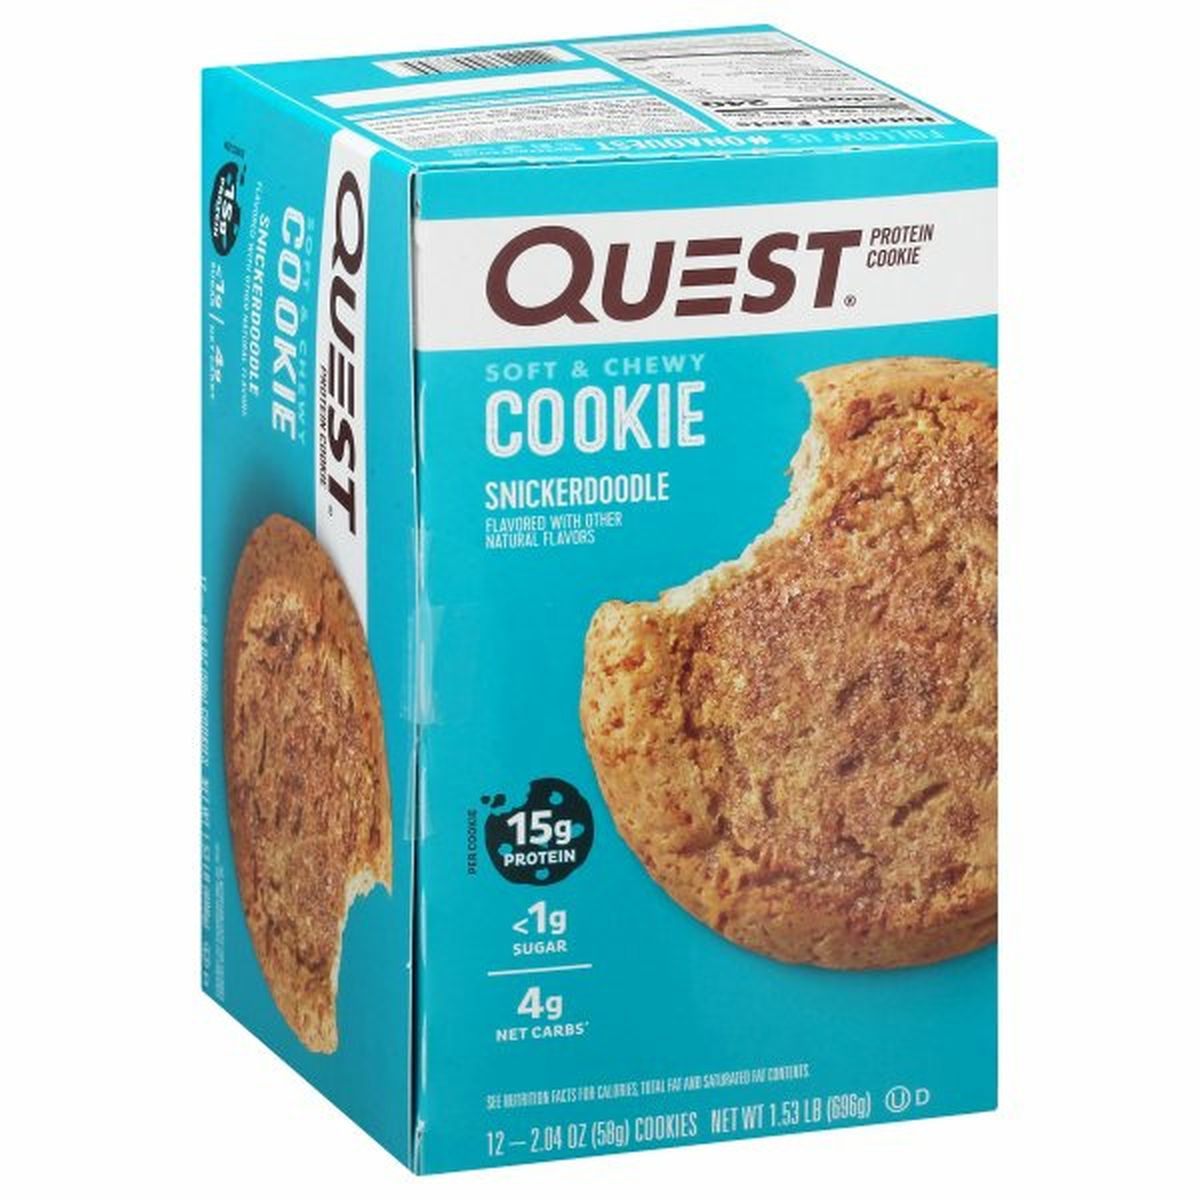 Calories in Quest Protein Cookies, Snickerdoodle